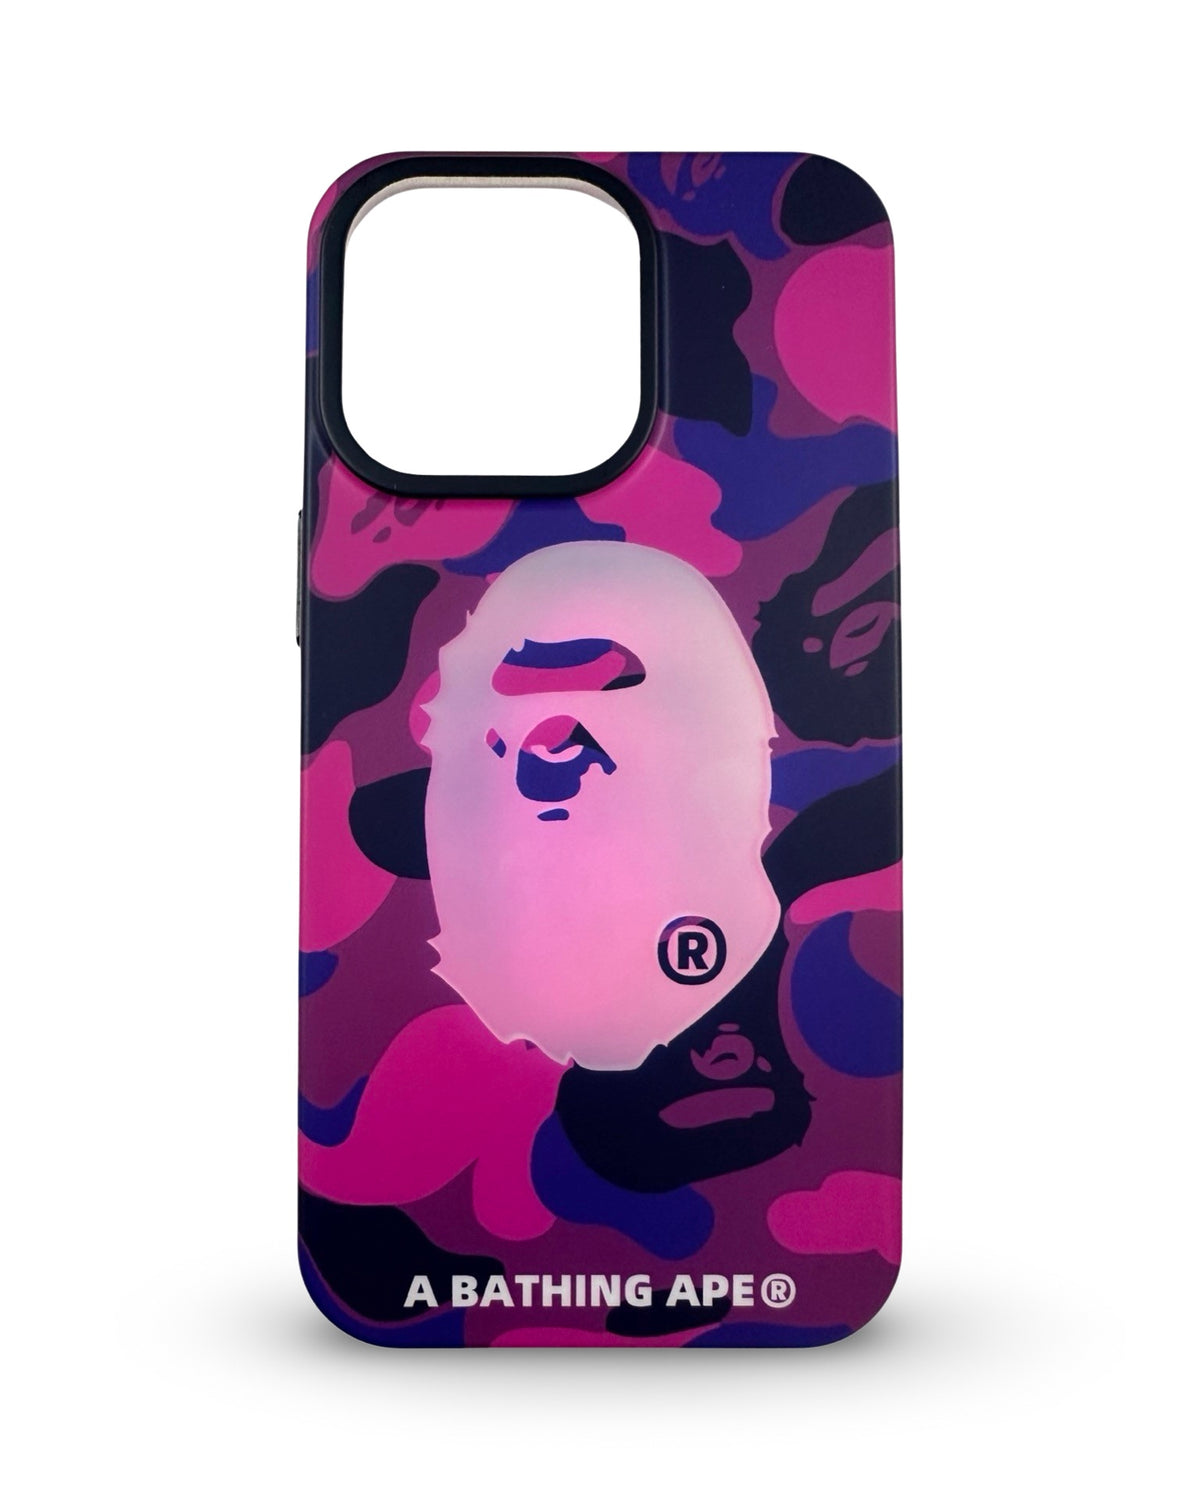 CaseNerd "Ape Purple Camo" iPhone Case